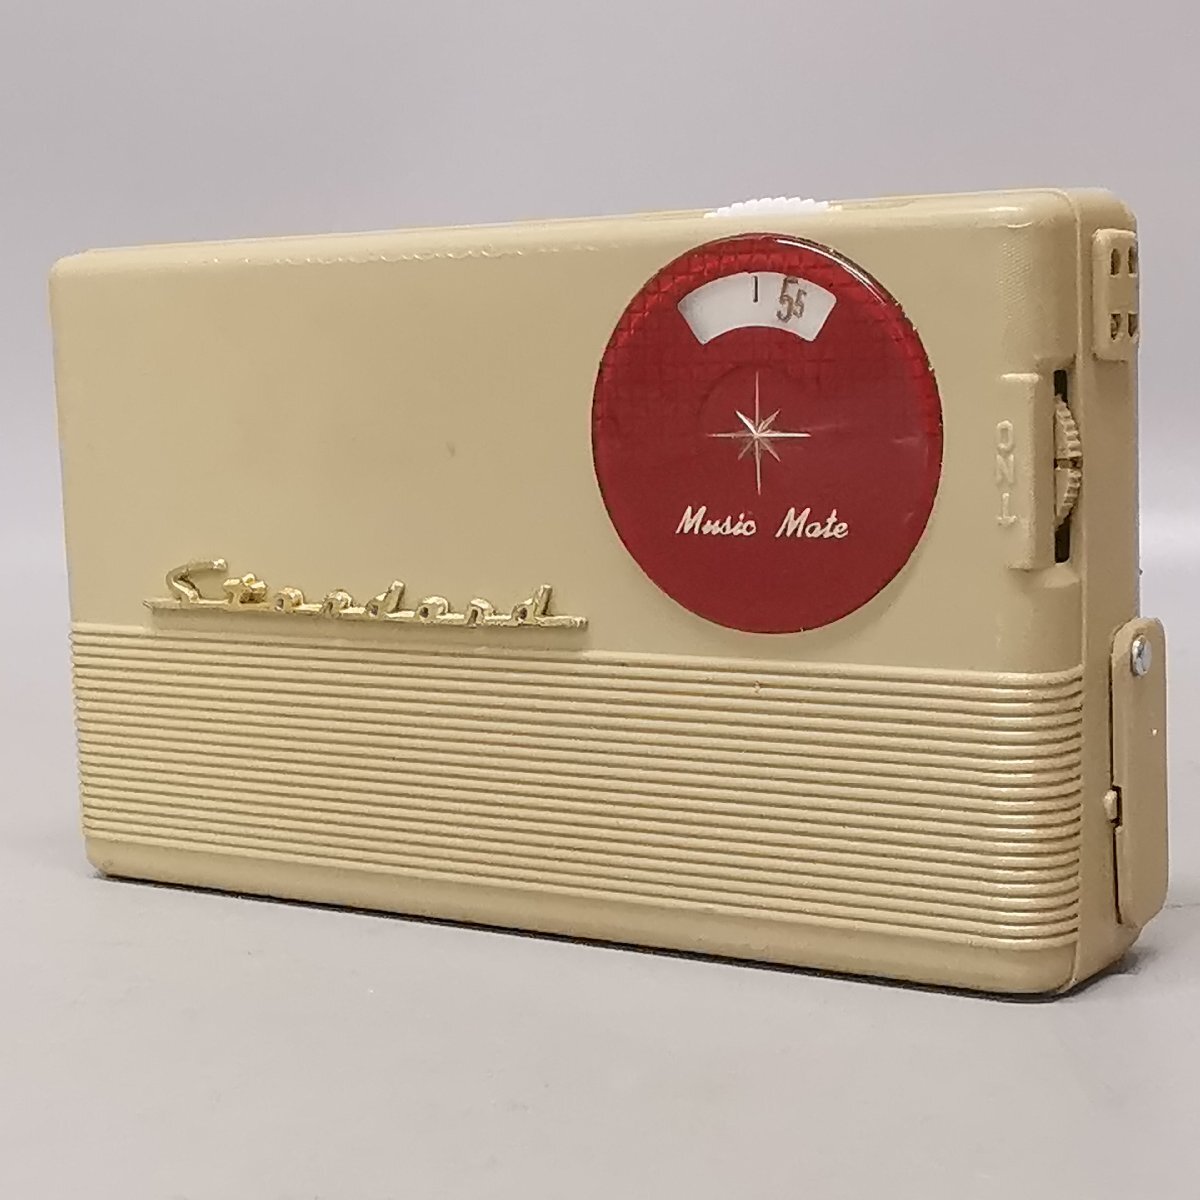  Showa Retro стандартный мобильный радио вакуумная трубка радио портативный радио SR-130 античный Vintage Junk Z5656